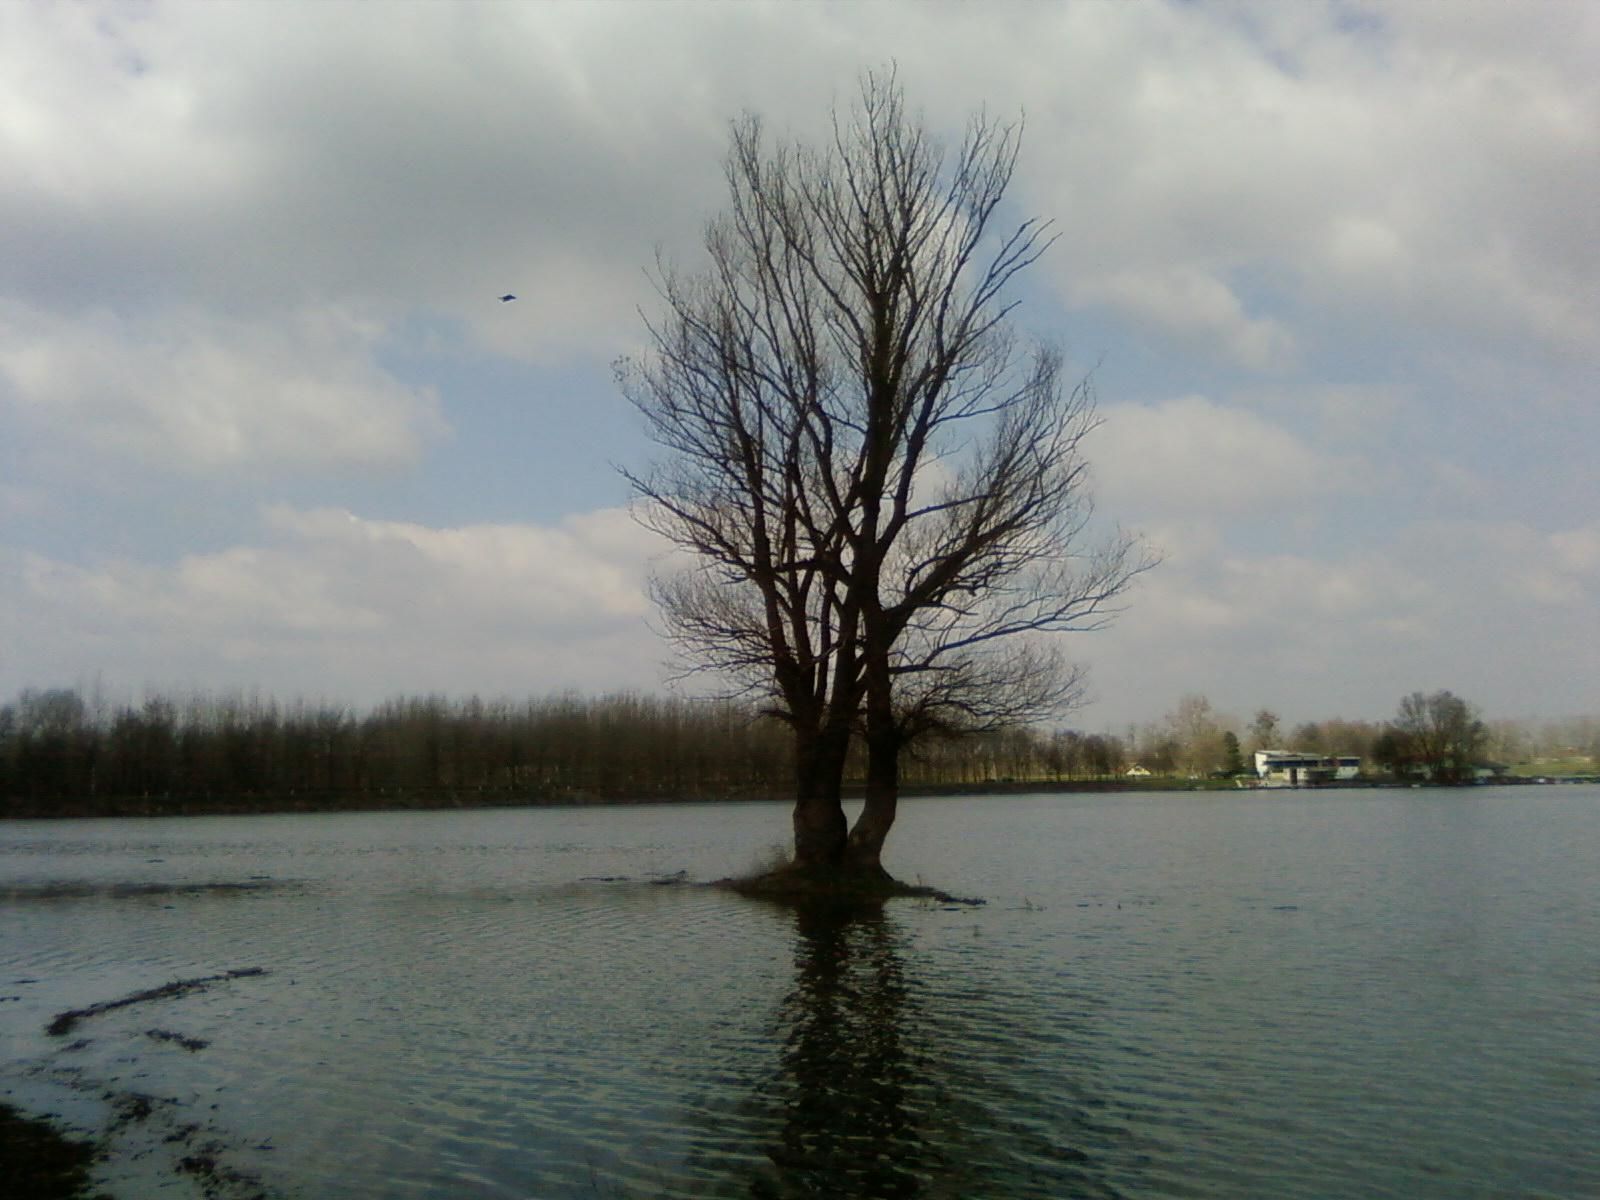 File:Alone tree in water.jpg - Wikimedia Commons